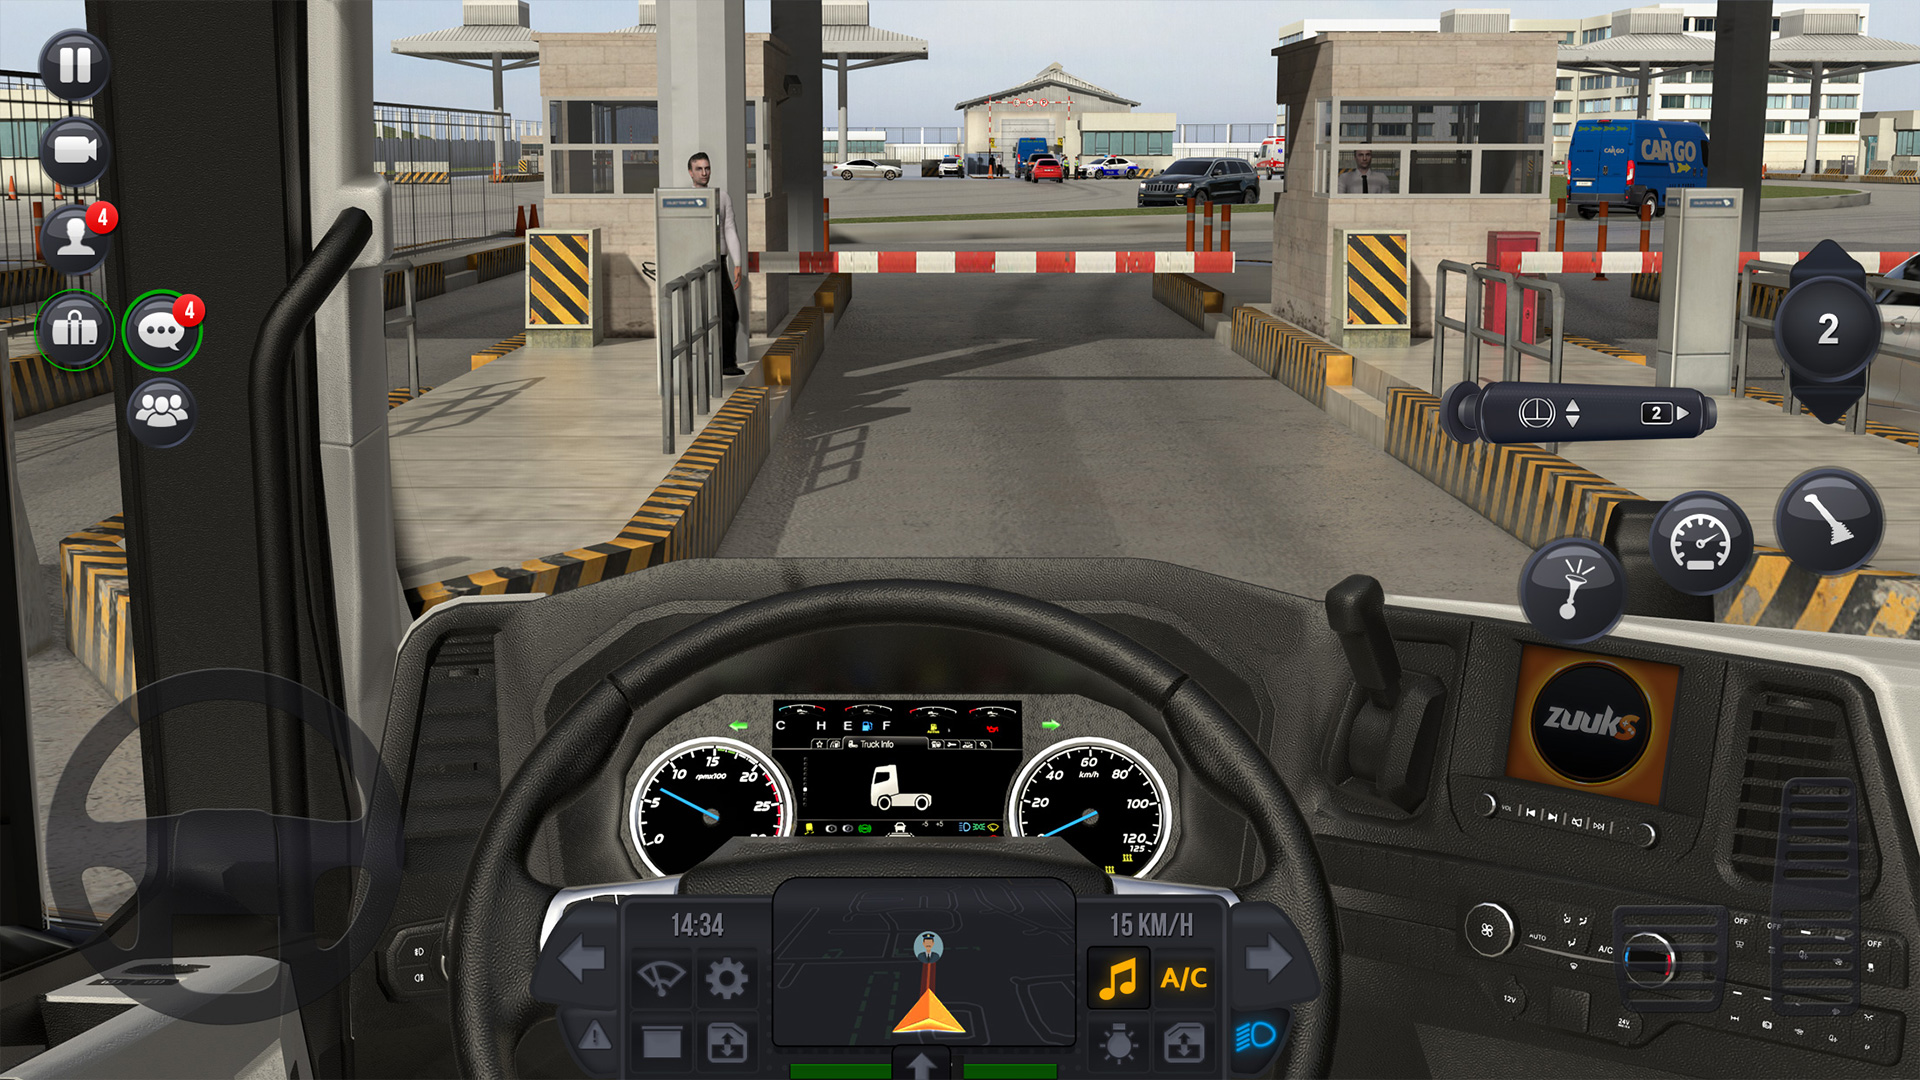 Jogos De Simulador De Caminhão versão móvel andróide iOS apk